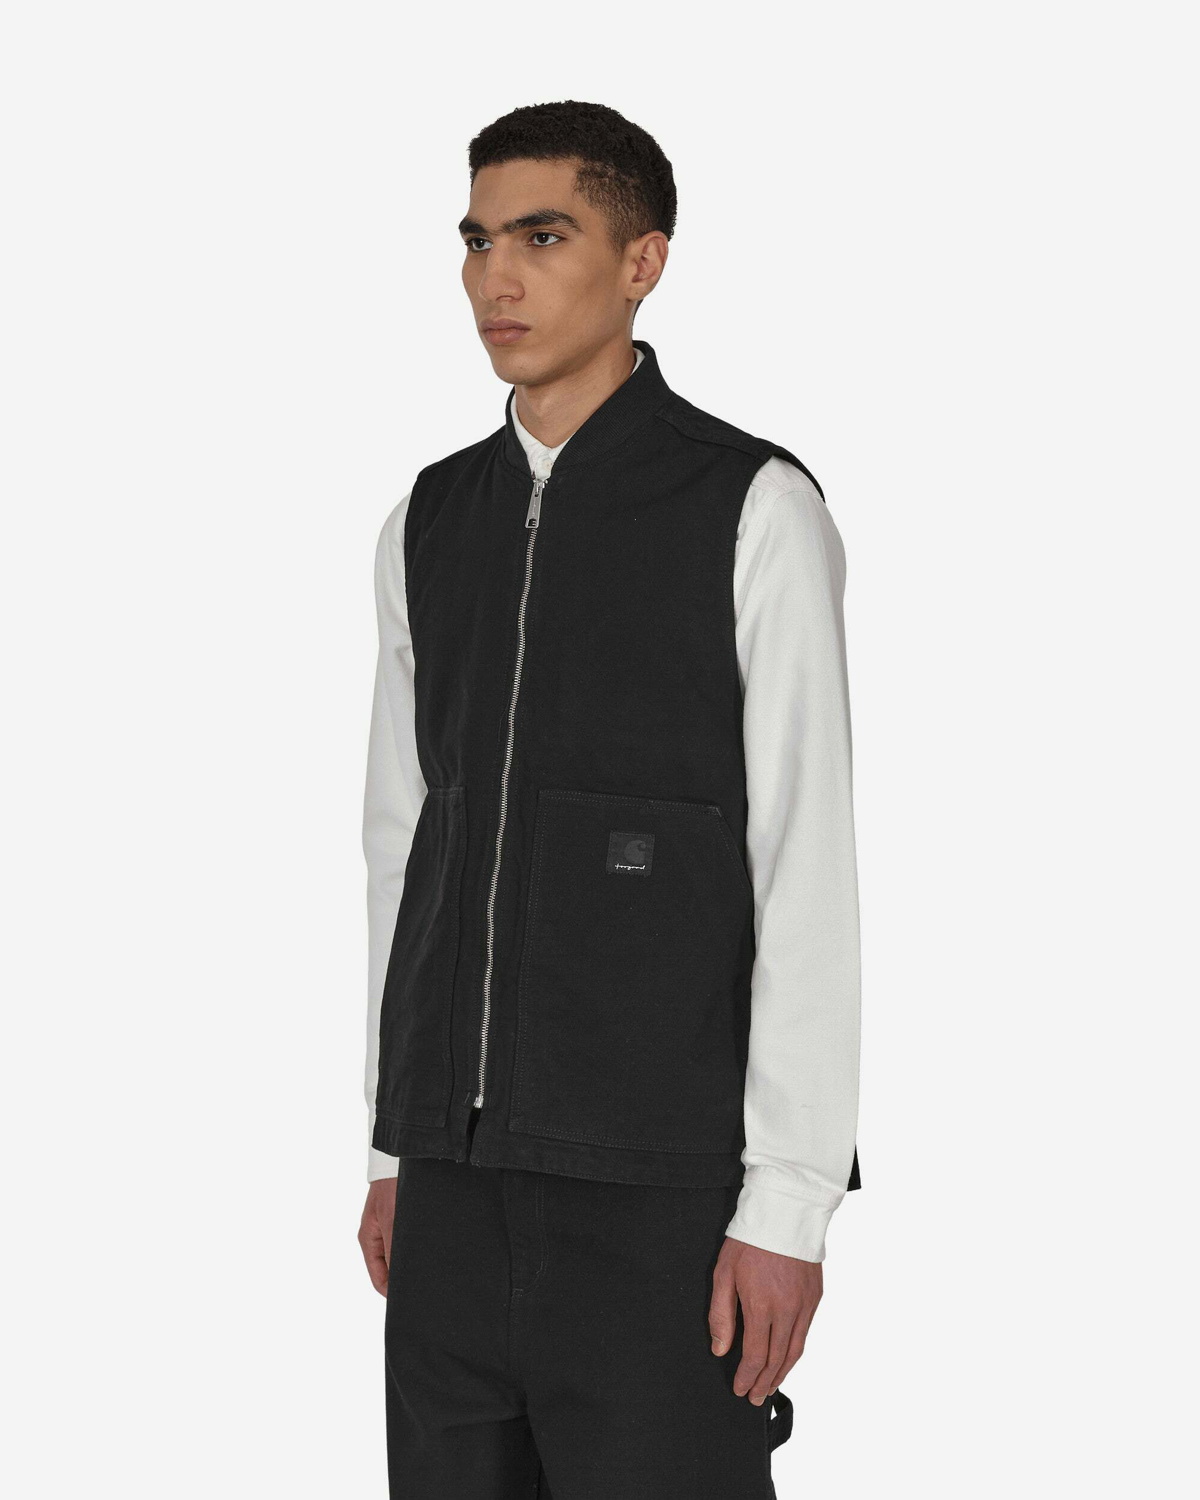 正規品販促激安 Carhartt TOOGOOD vest ベスト sizeXS black | www ...